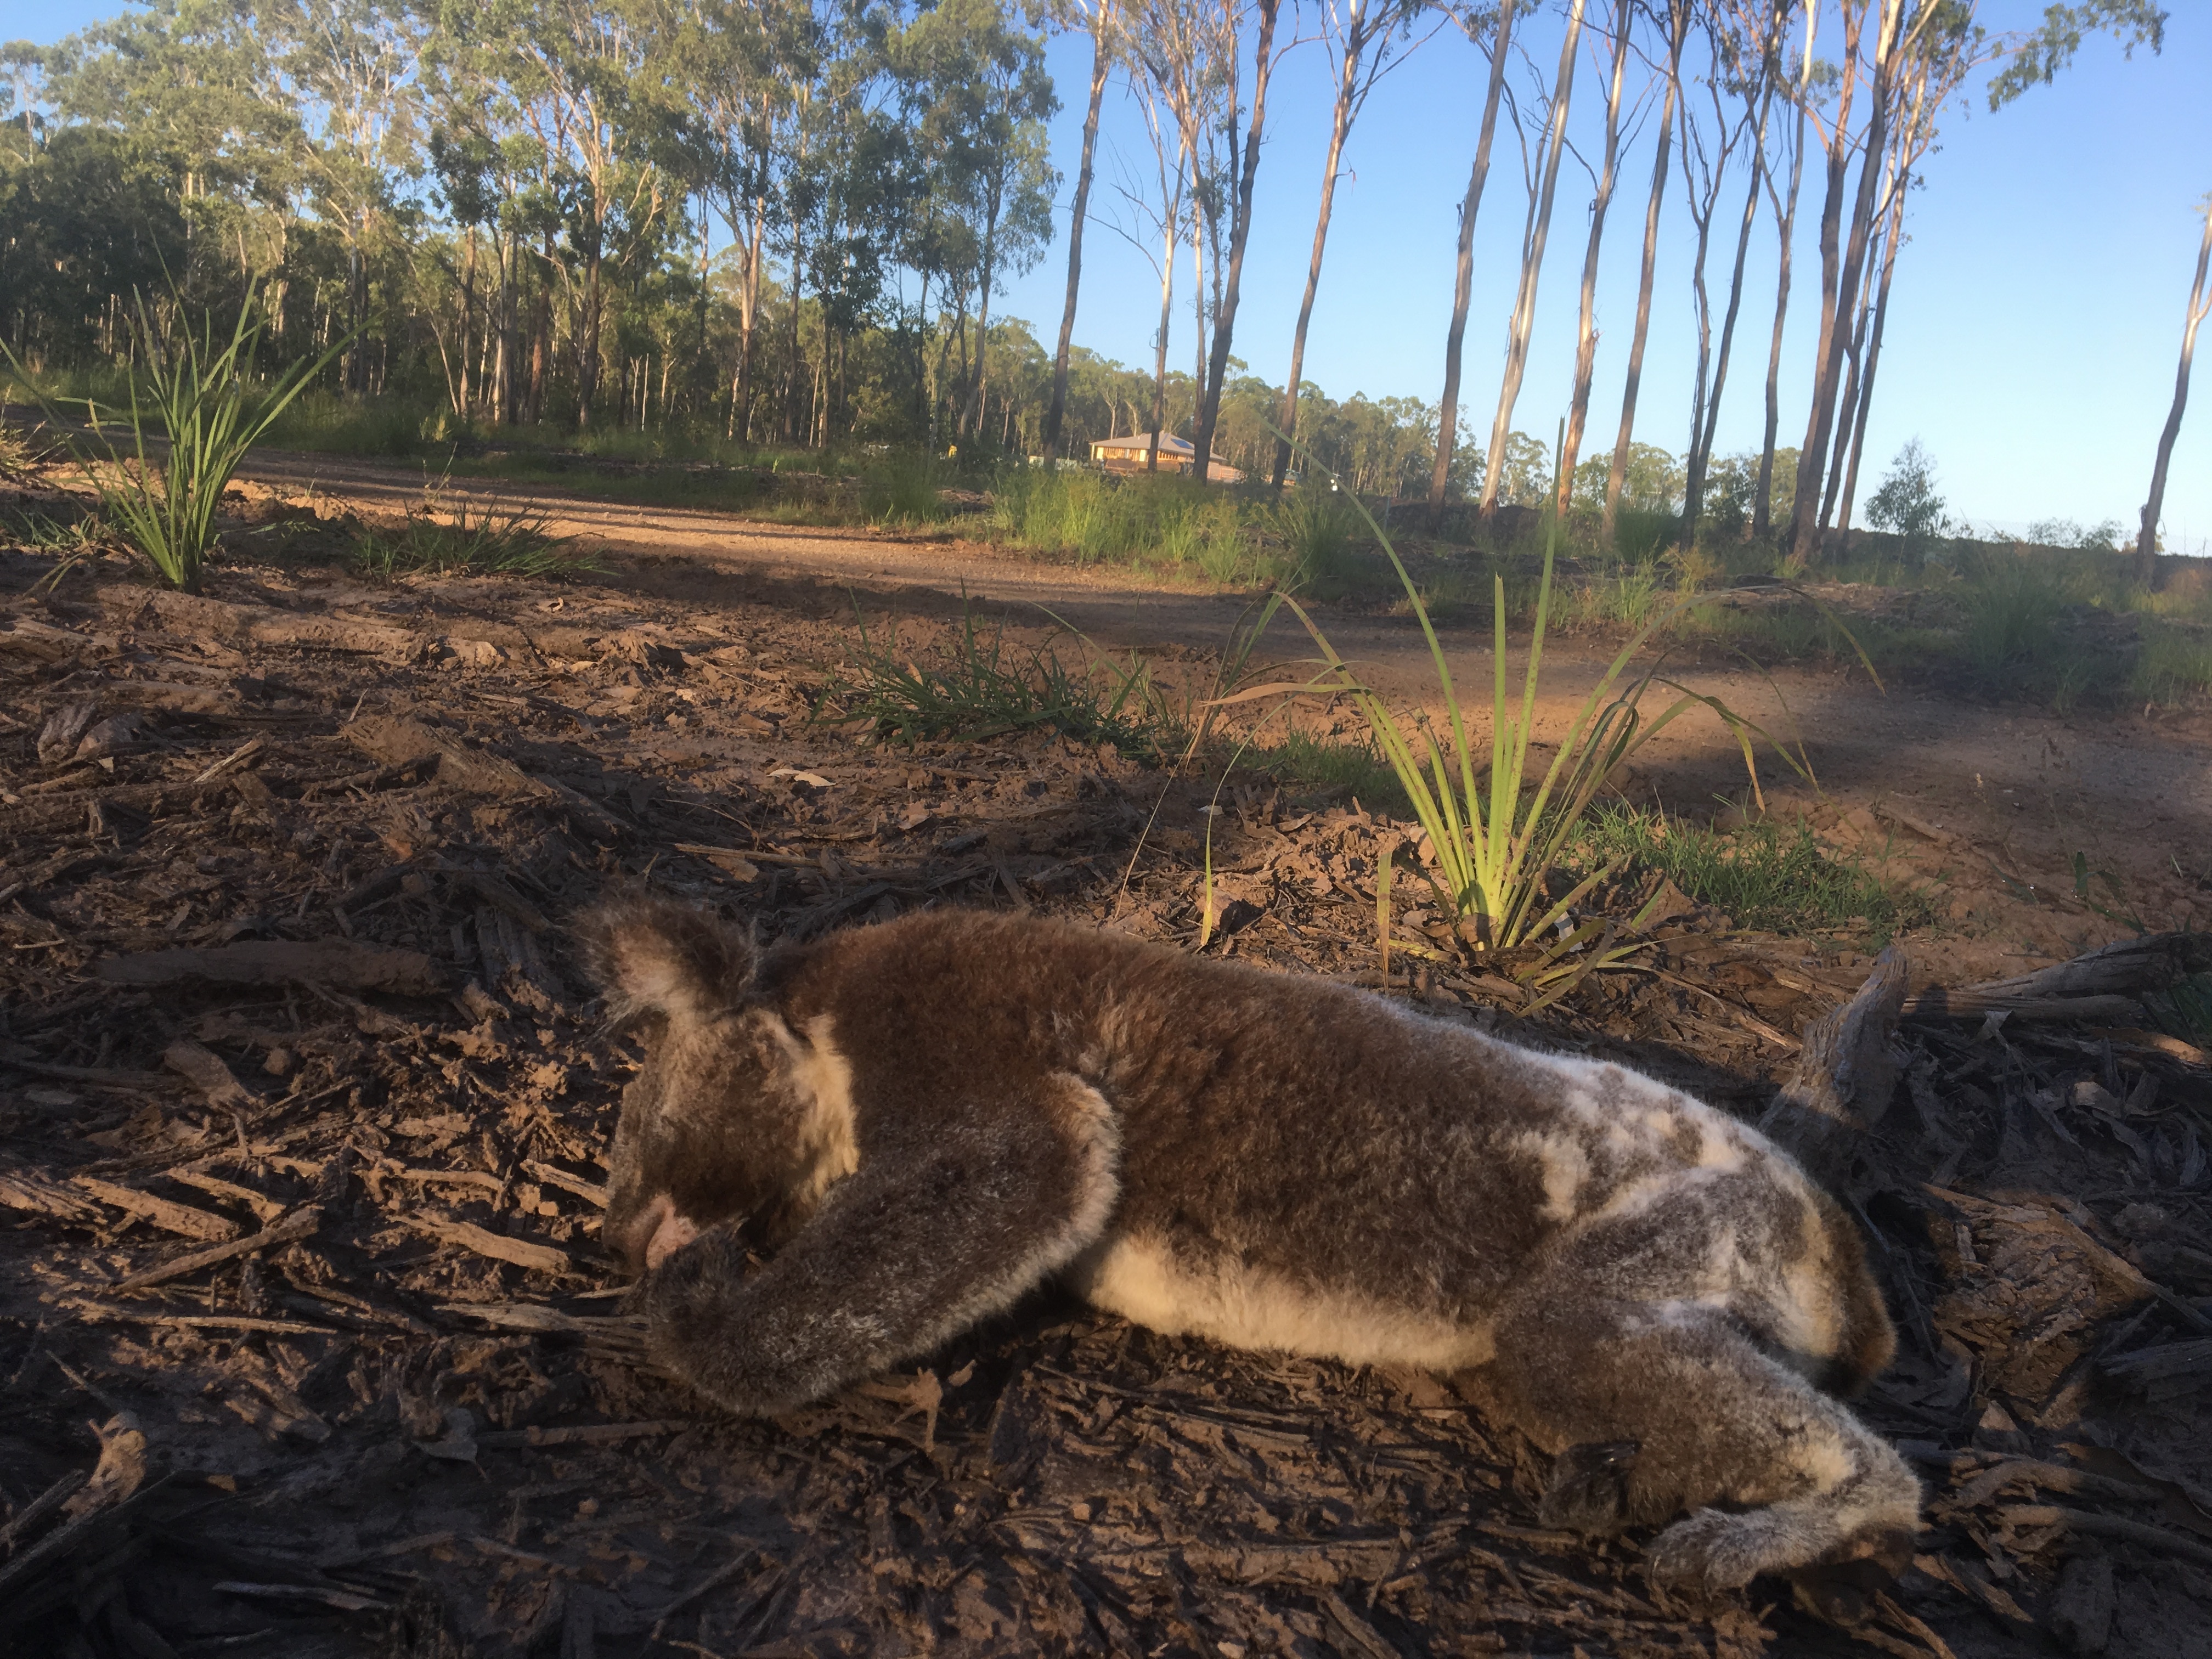 A dead koala found in Collingwood Park, Queensland, in January 2017.